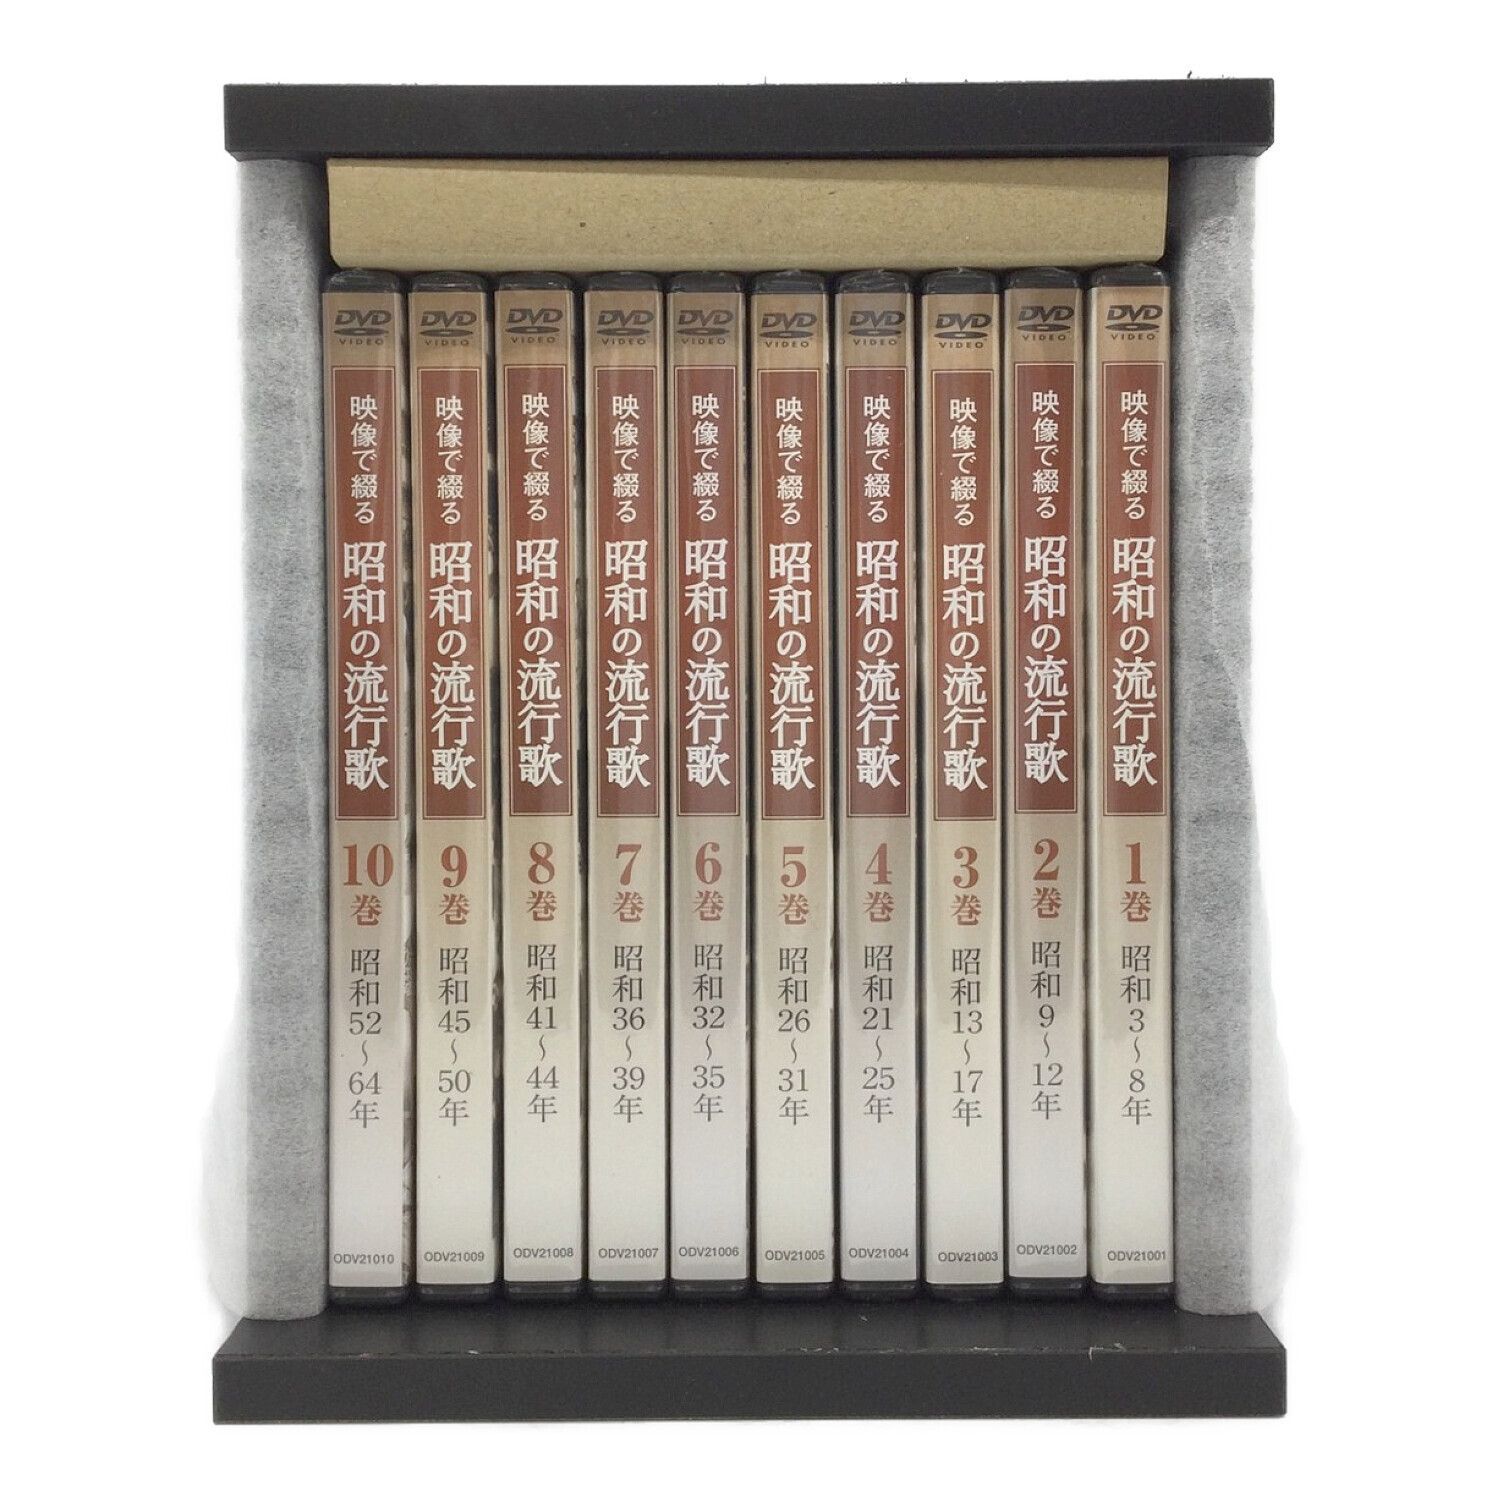 ネット限定】 映像で綴る 昭和の流行歌 全10巻 ほぼ未使用 全巻セット 